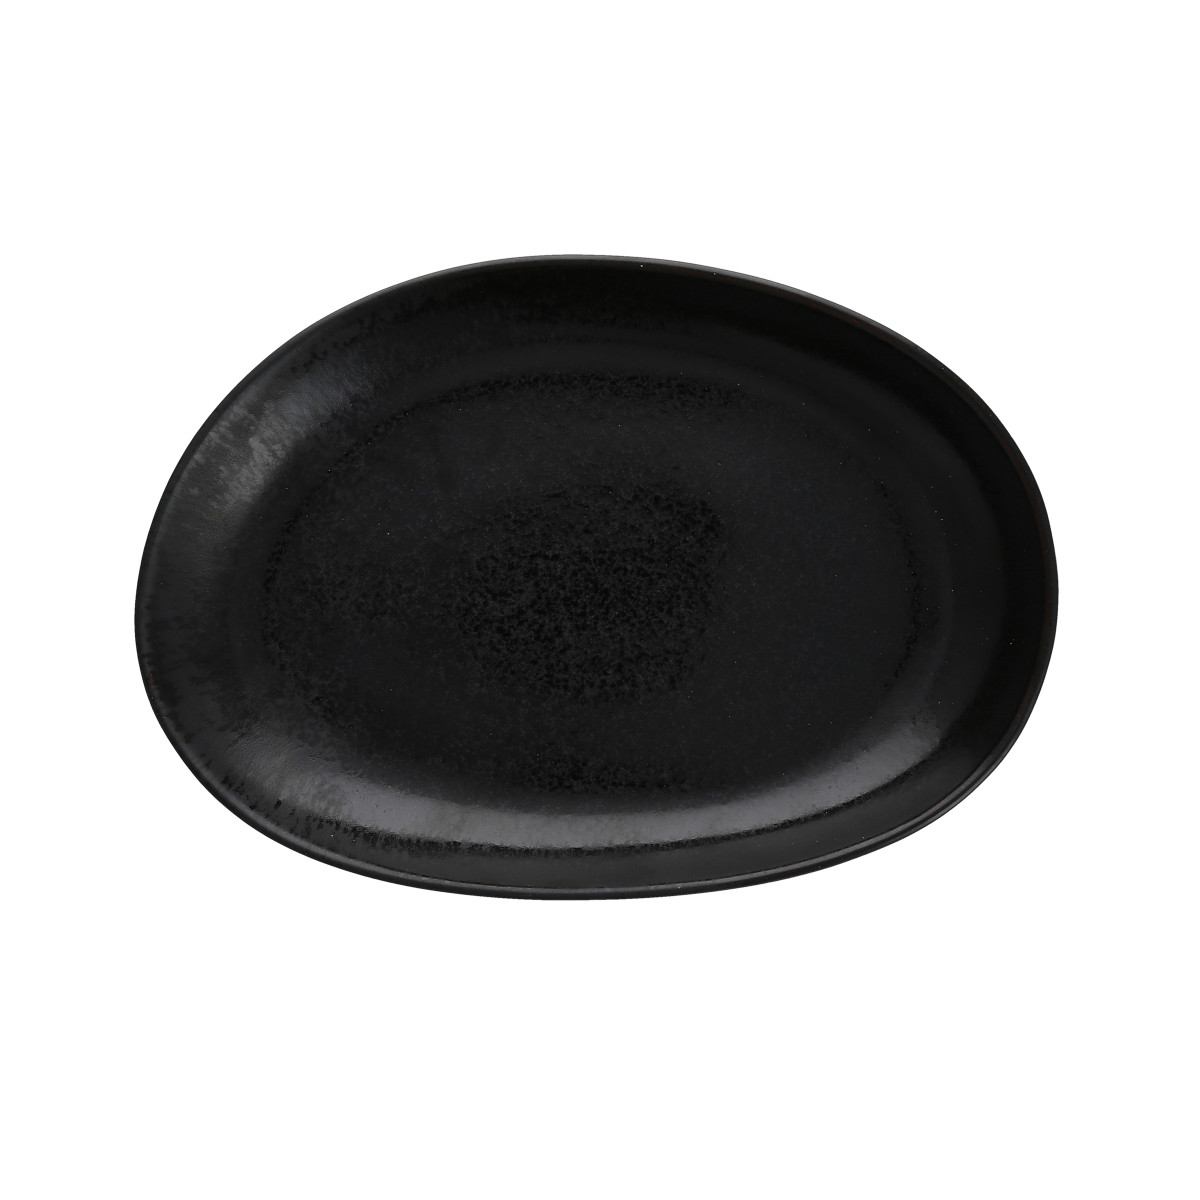 Cairn Midnight Oval Platter 14"